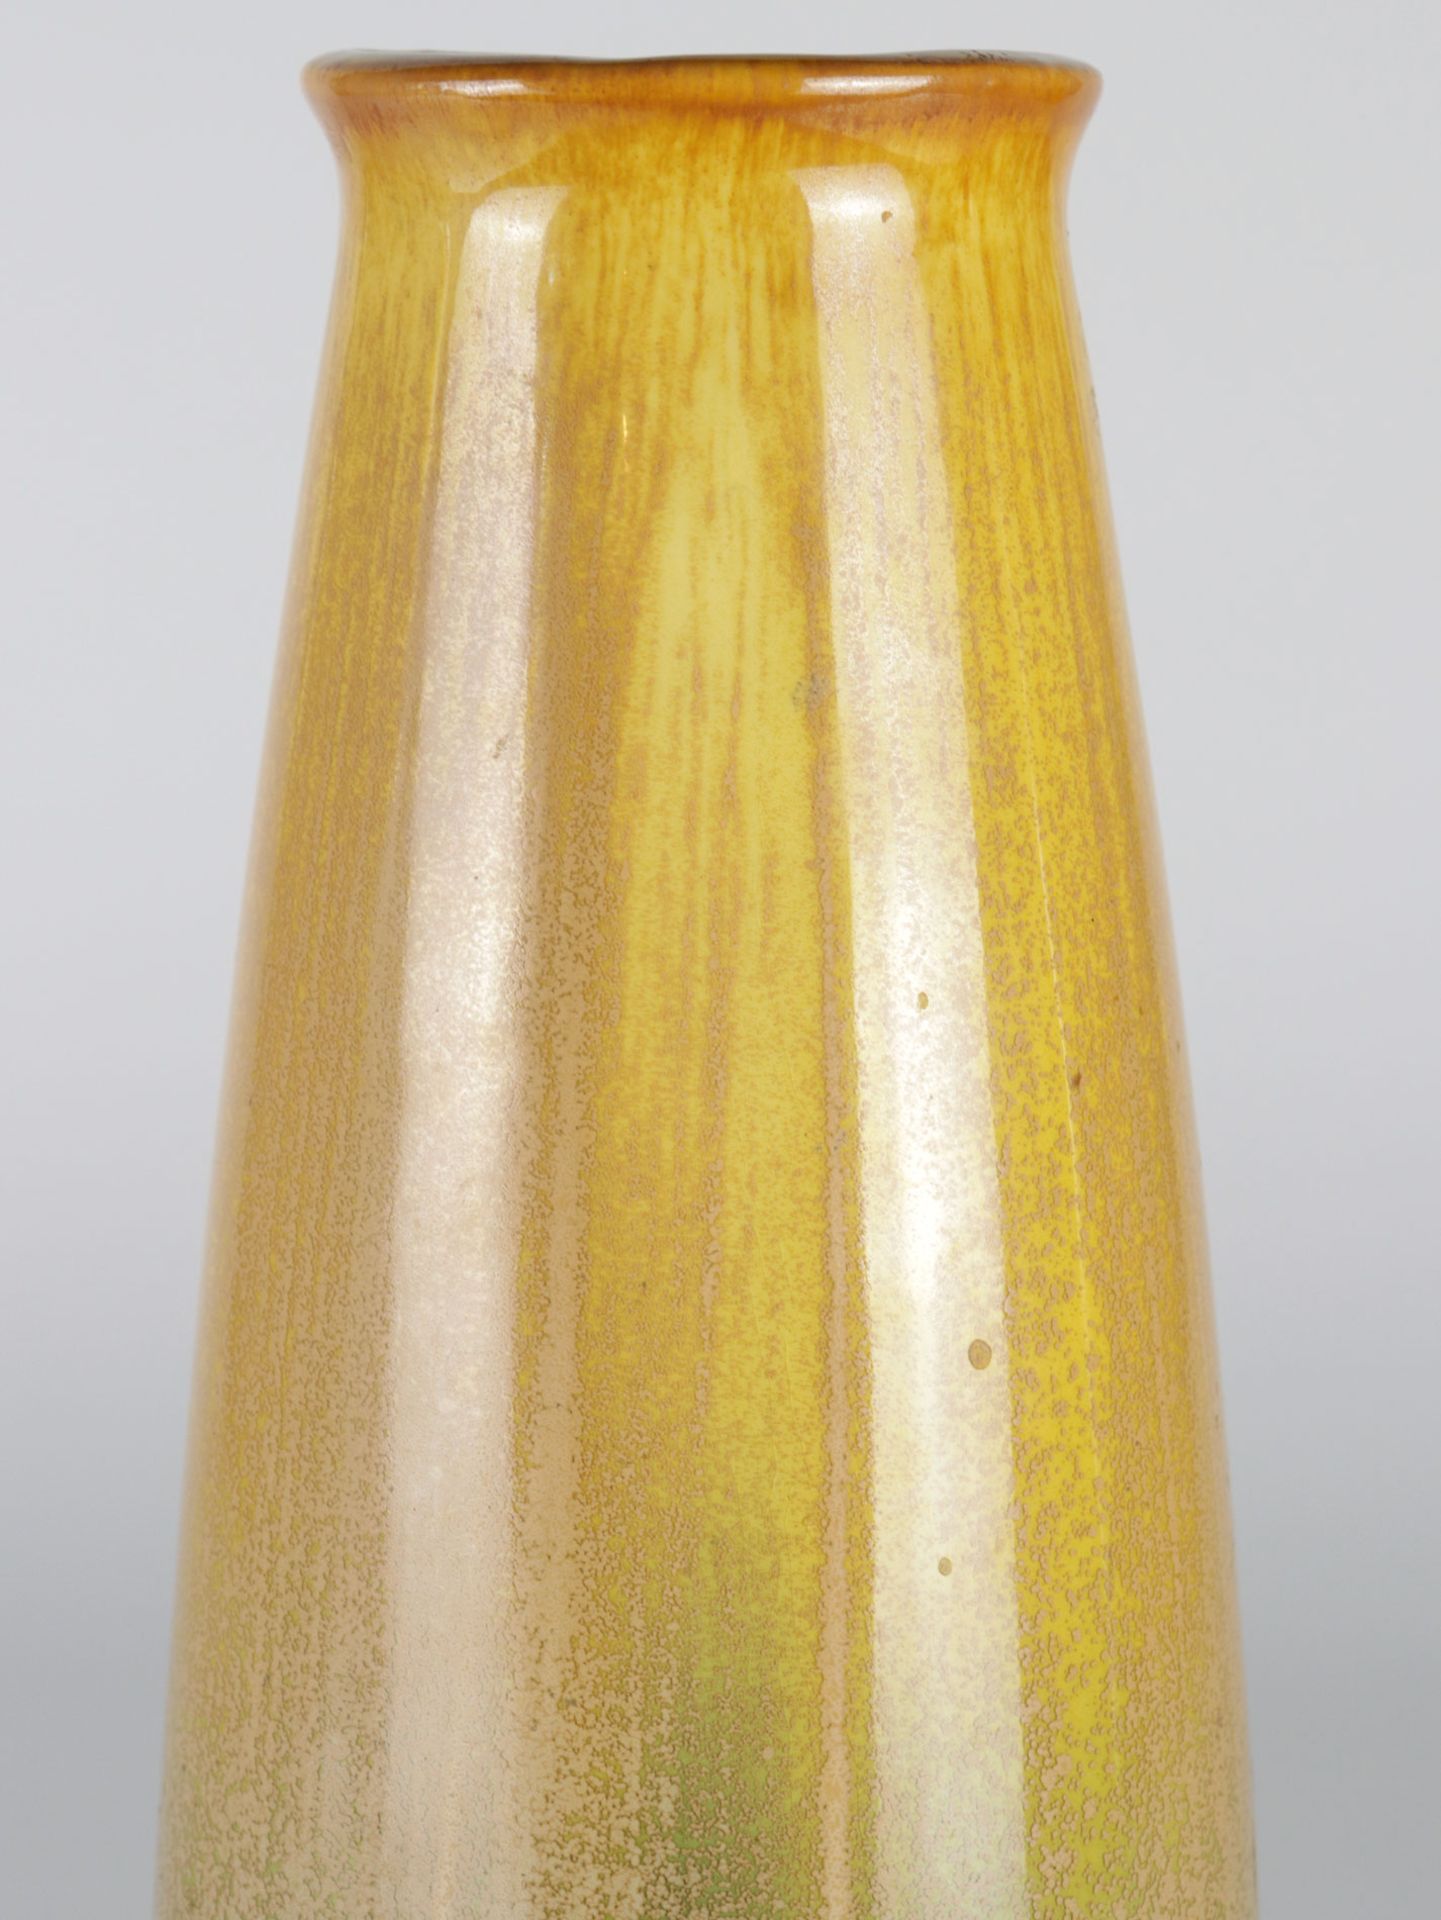 Meißner Ofen u. Porzellanfabrik, vorm. Teichert - Vase - Image 7 of 7